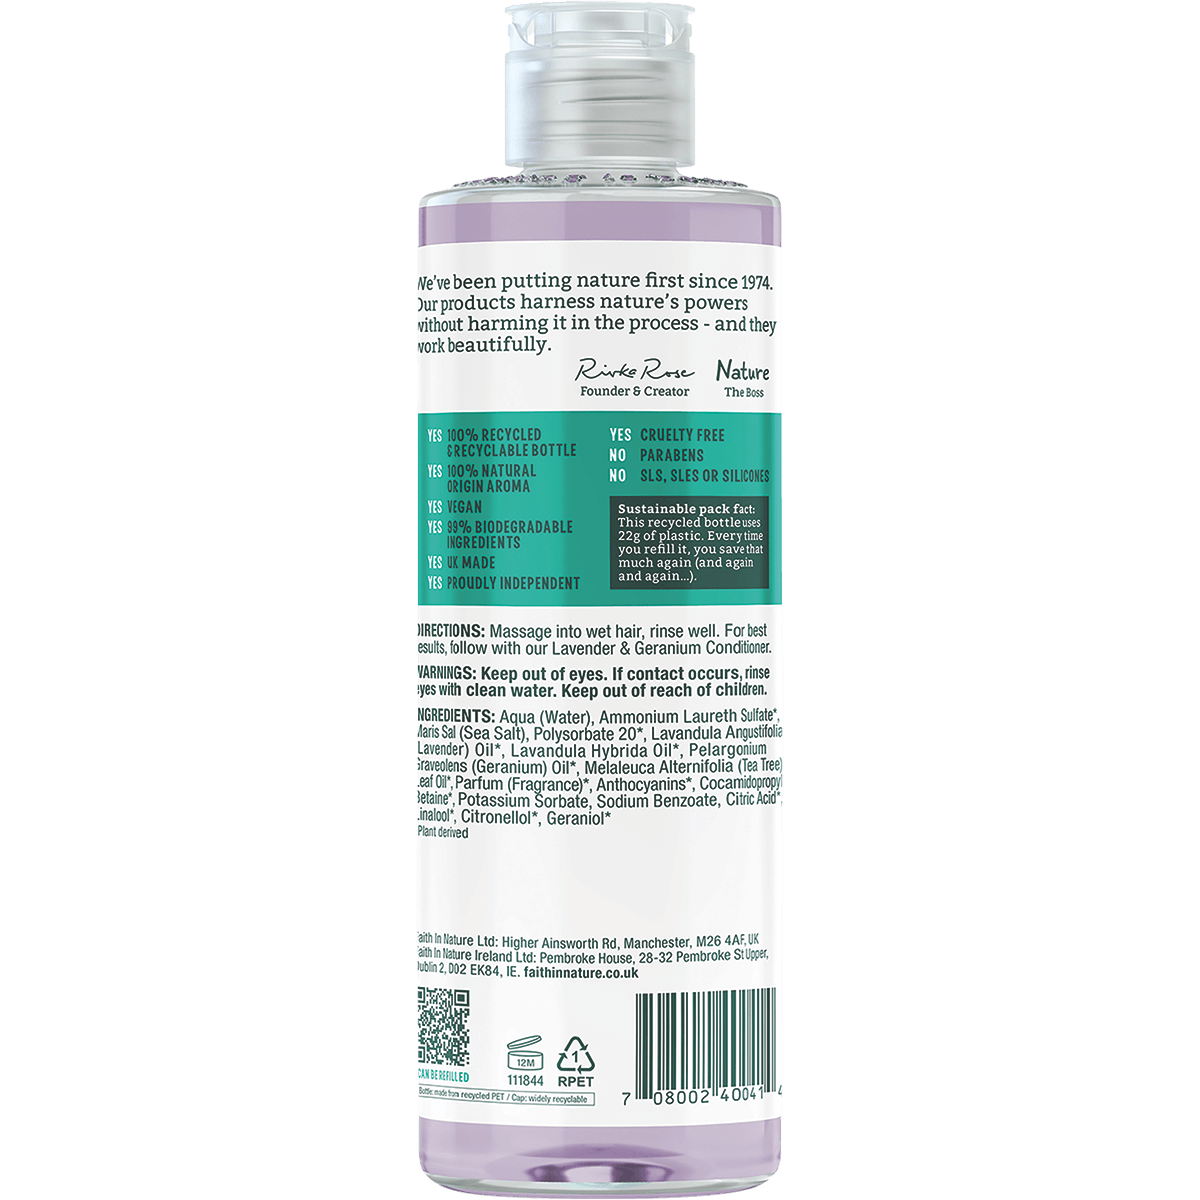 Faith In Nature Lavender and Geranium Shampoo 400ml - QVM Vitamins™